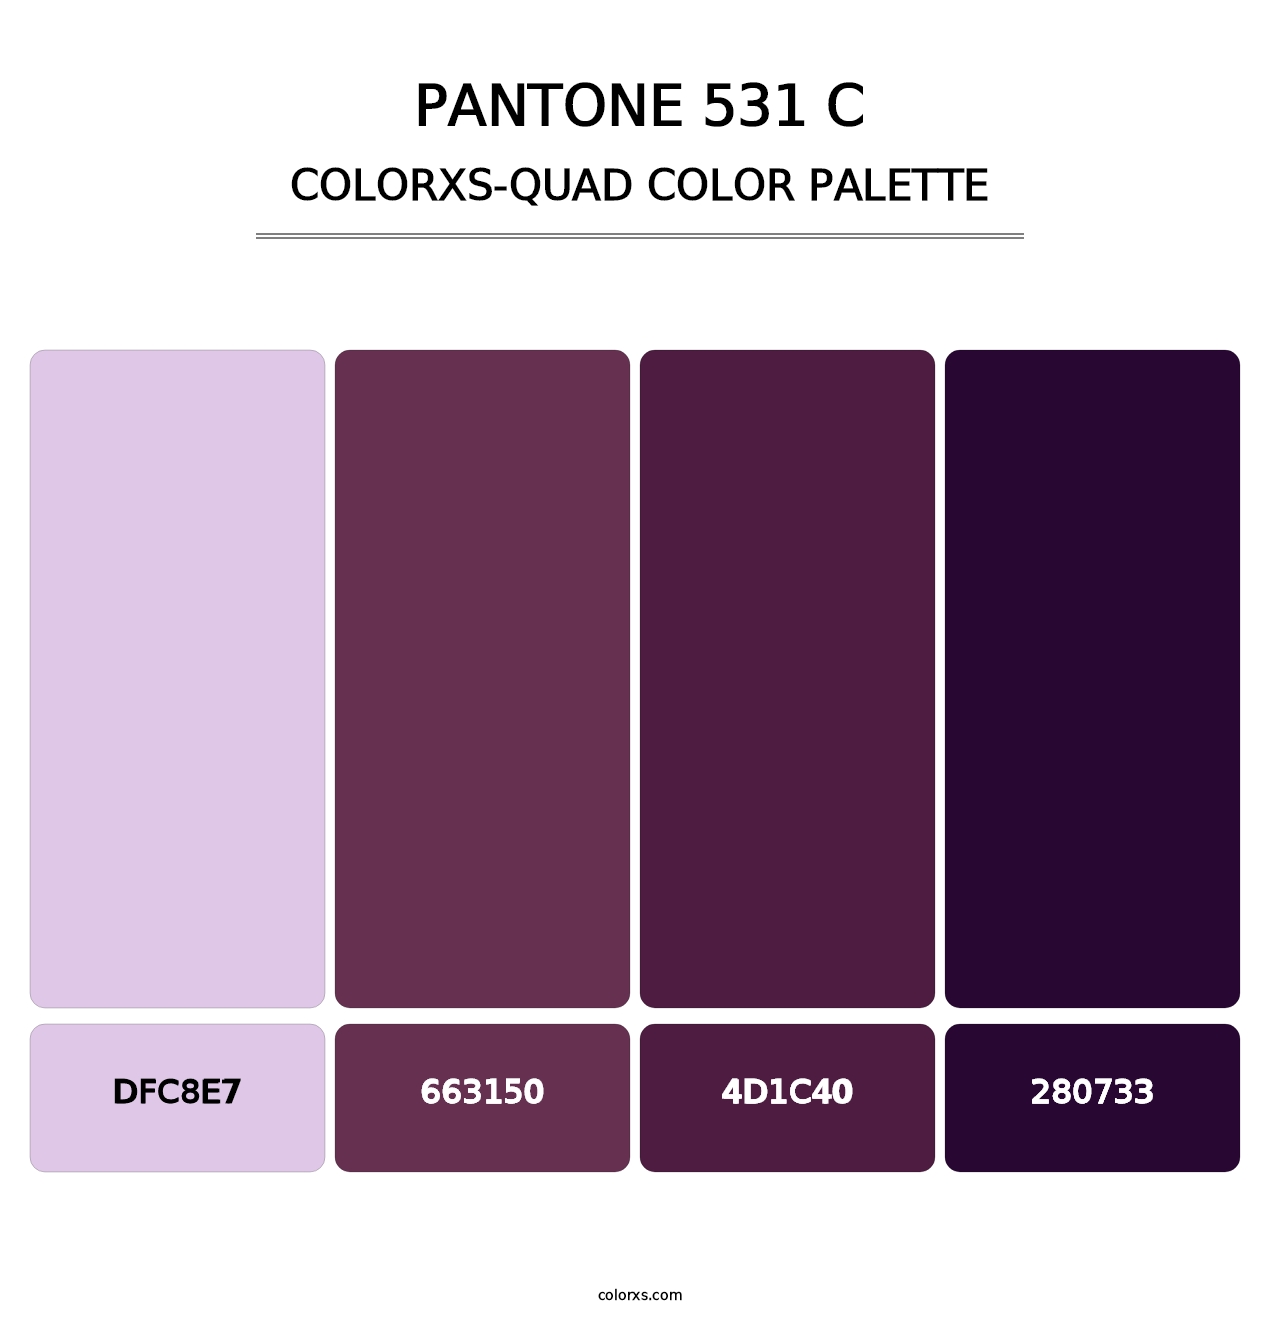 PANTONE 531 C - Colorxs Quad Palette